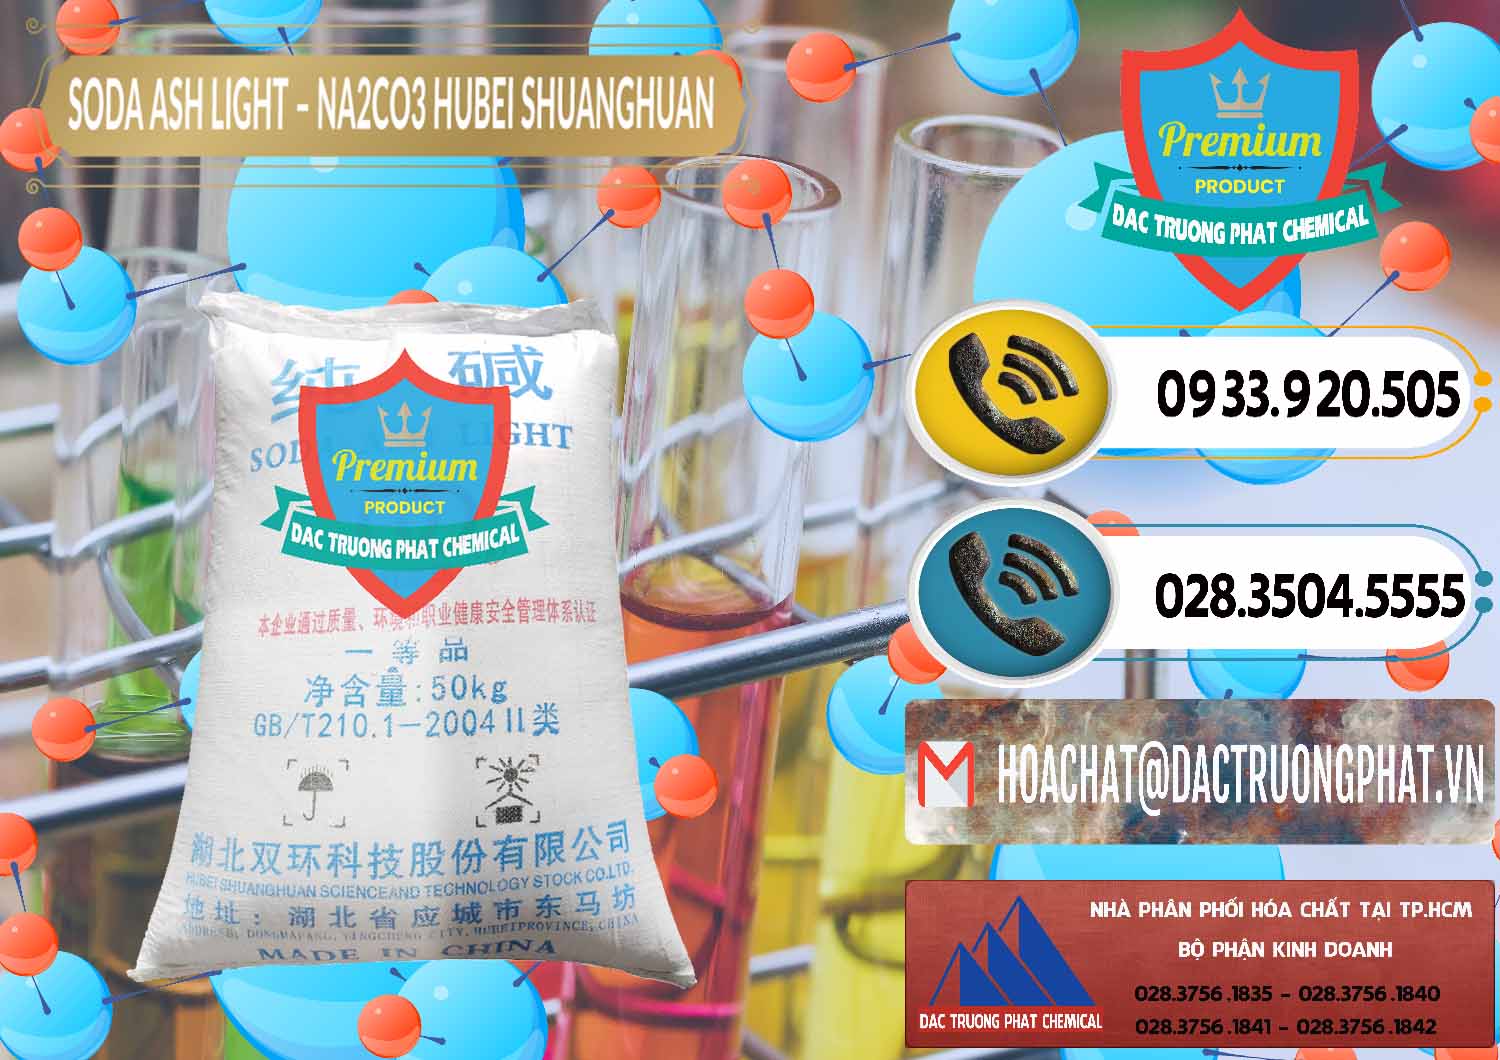 Cty chuyên phân phối - bán Soda Ash Light - NA2CO3 2 Vòng Tròn Hubei Shuanghuan Trung Quốc China - 0130 - Đơn vị chuyên nhập khẩu và phân phối hóa chất tại TP.HCM - hoachatdetnhuom.vn